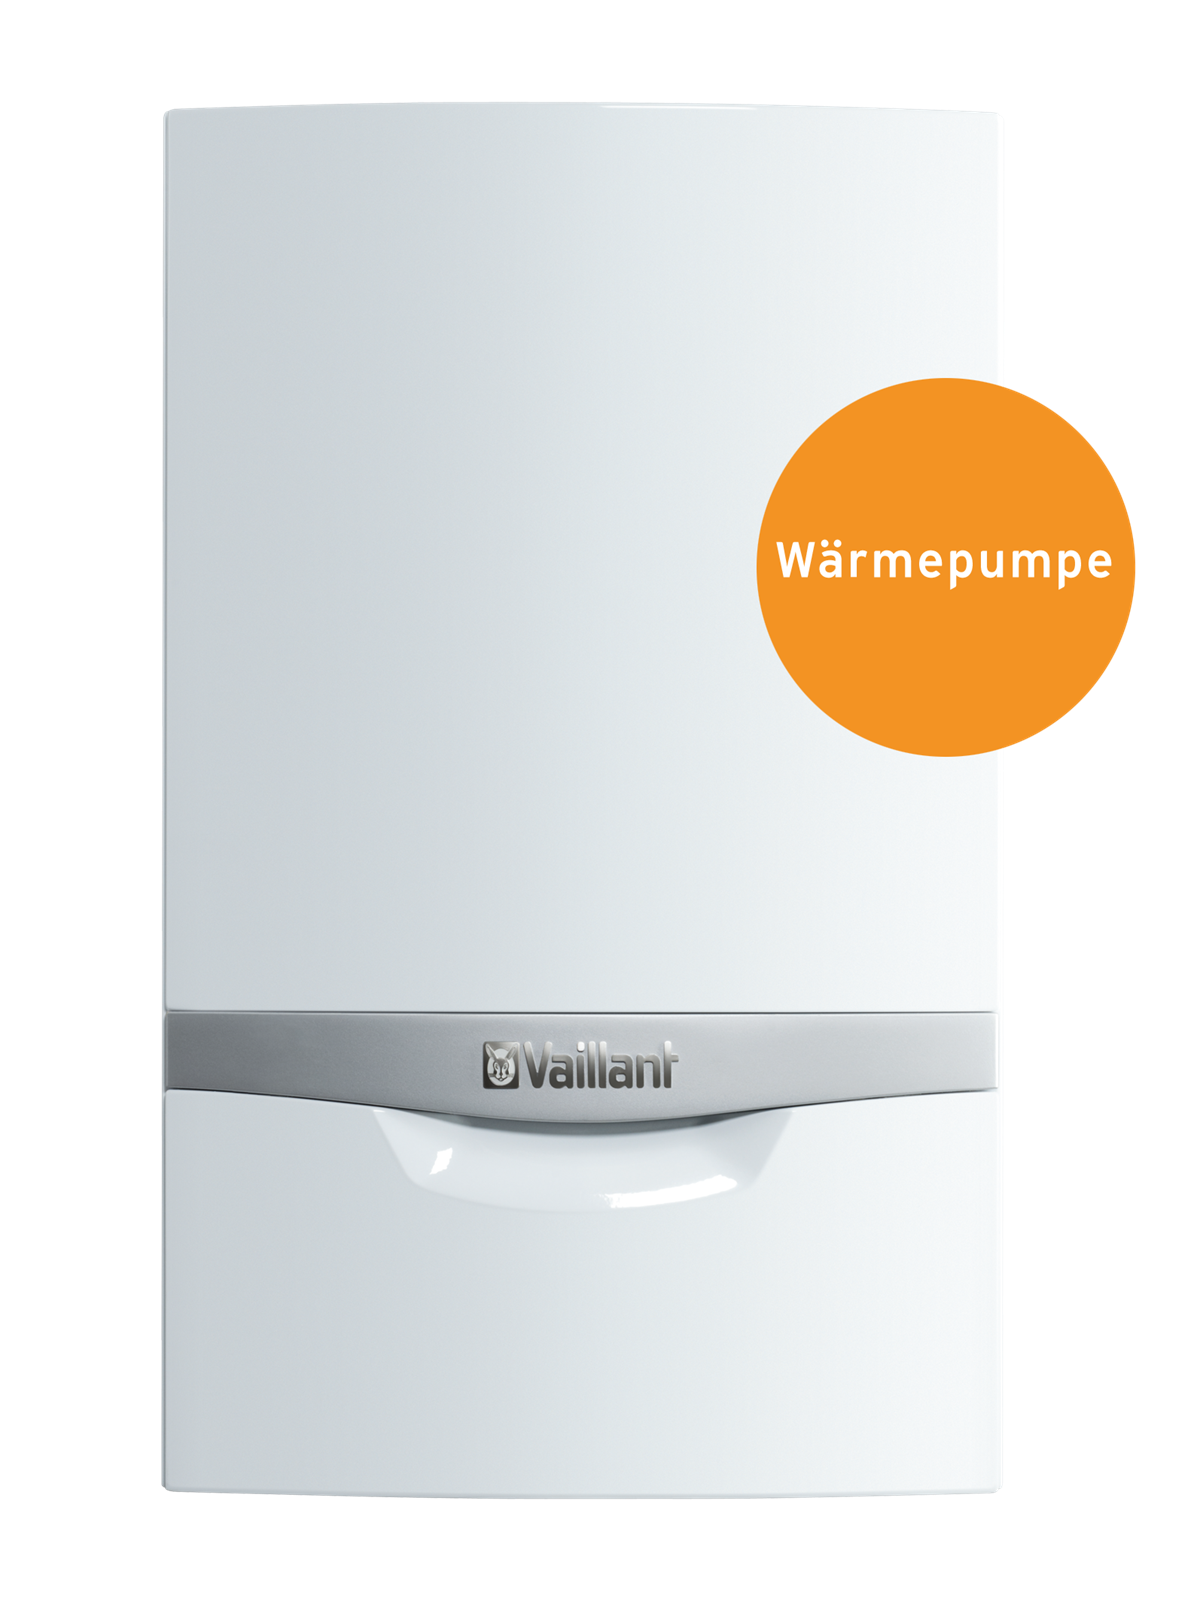 Die neue Vaillant Wärmepumpe geoTHERM wird wie eine Kombitherme an der Wand installiert. 